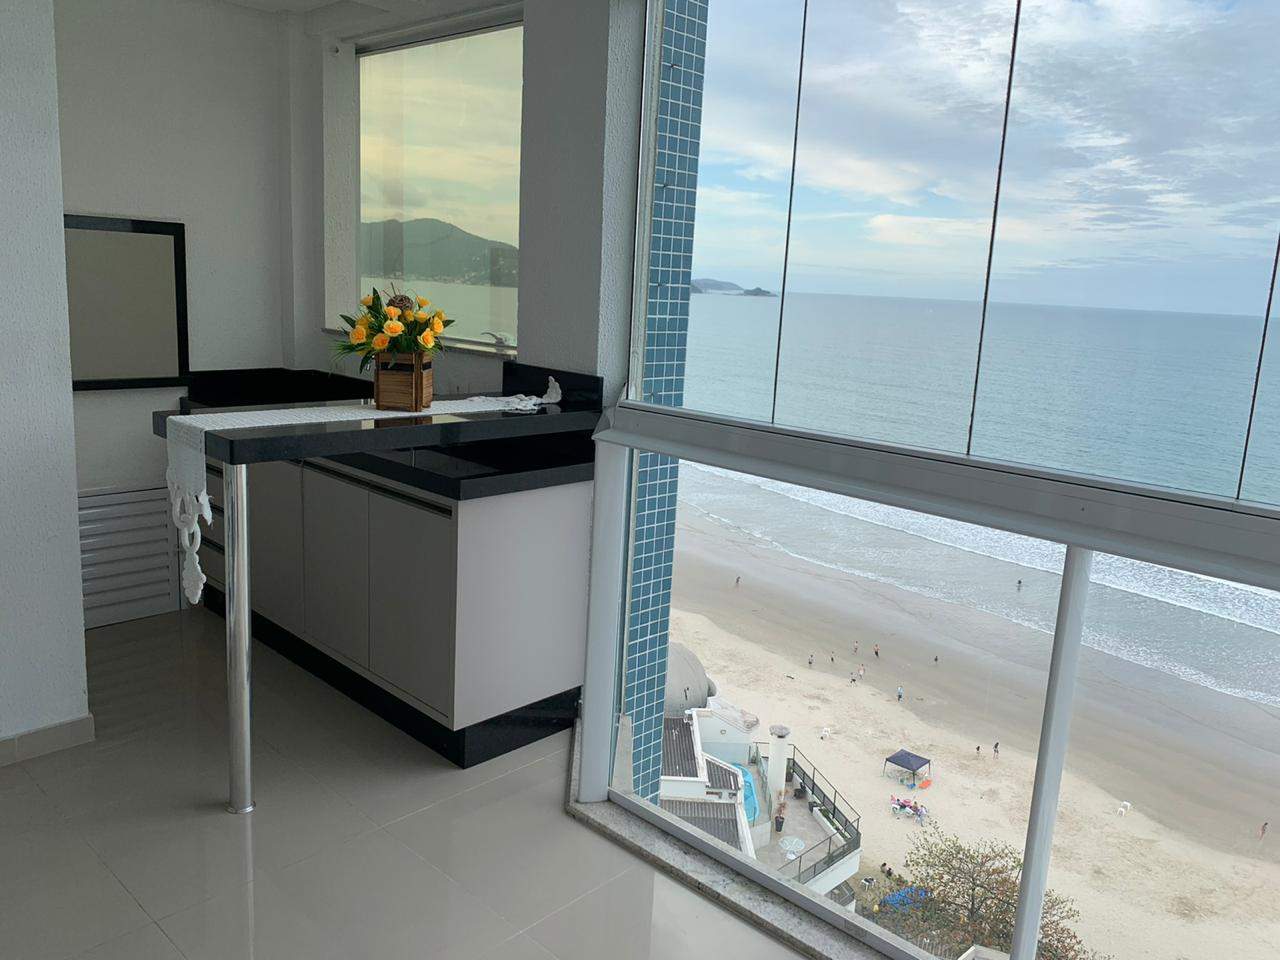 Apartamento de temporada em Meia Praia, Itapema / Santa Catarina.  Apartamento frente para o mar 3 suites climatizadas - Meia Praia